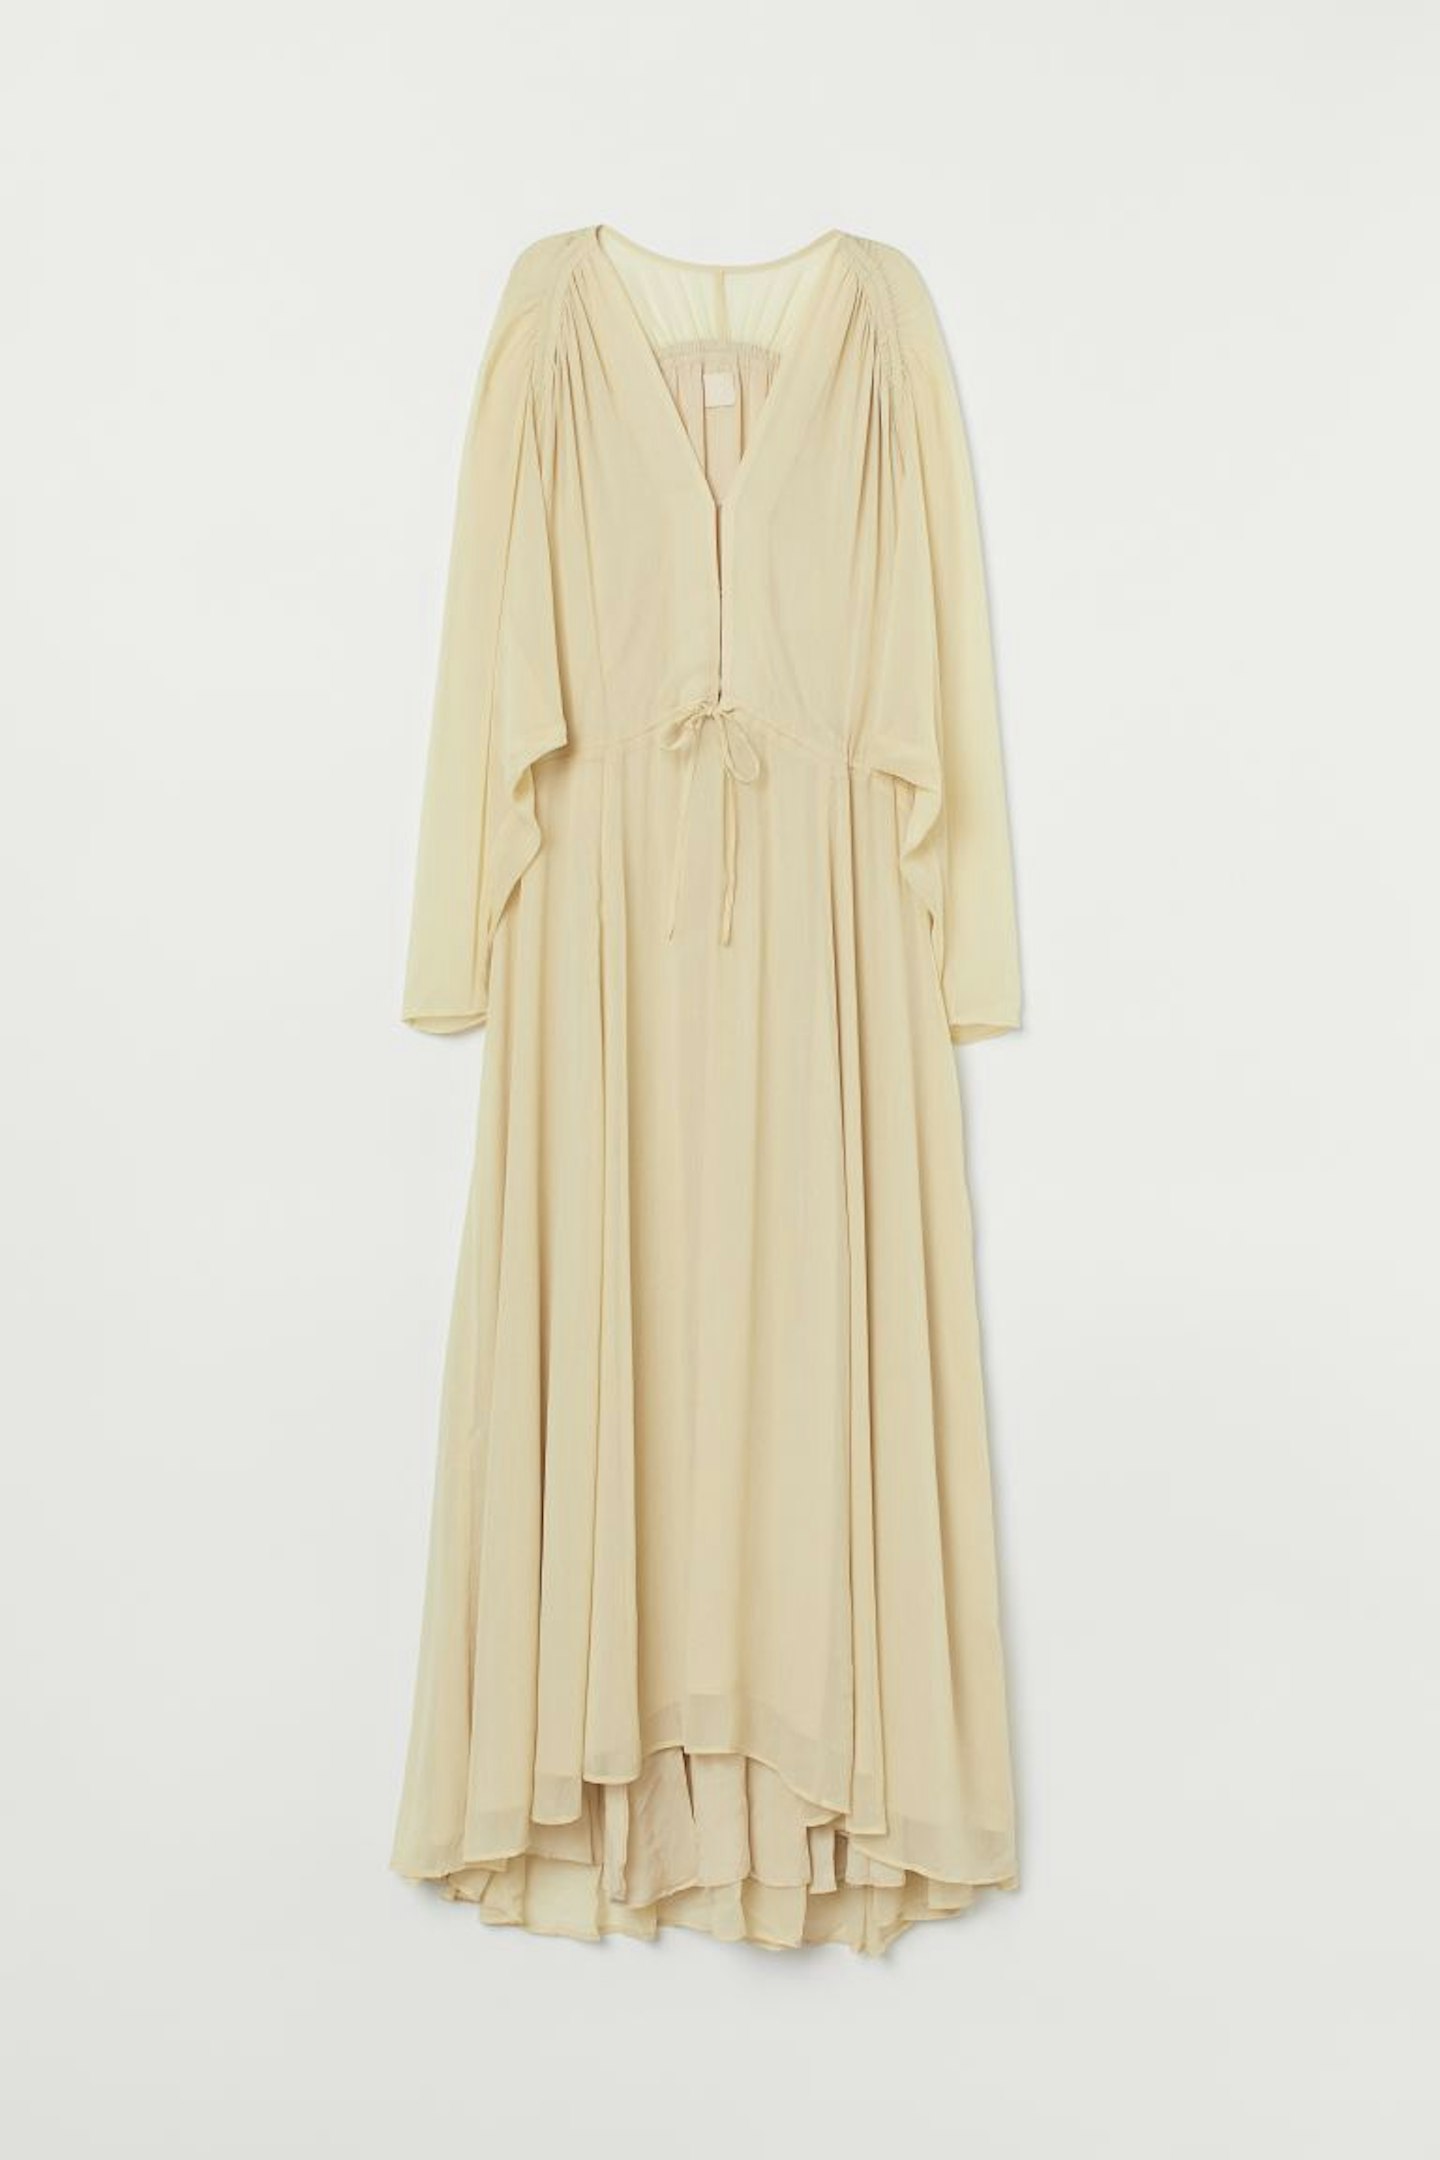 H&M, Long Chiffon Dress, £39.99